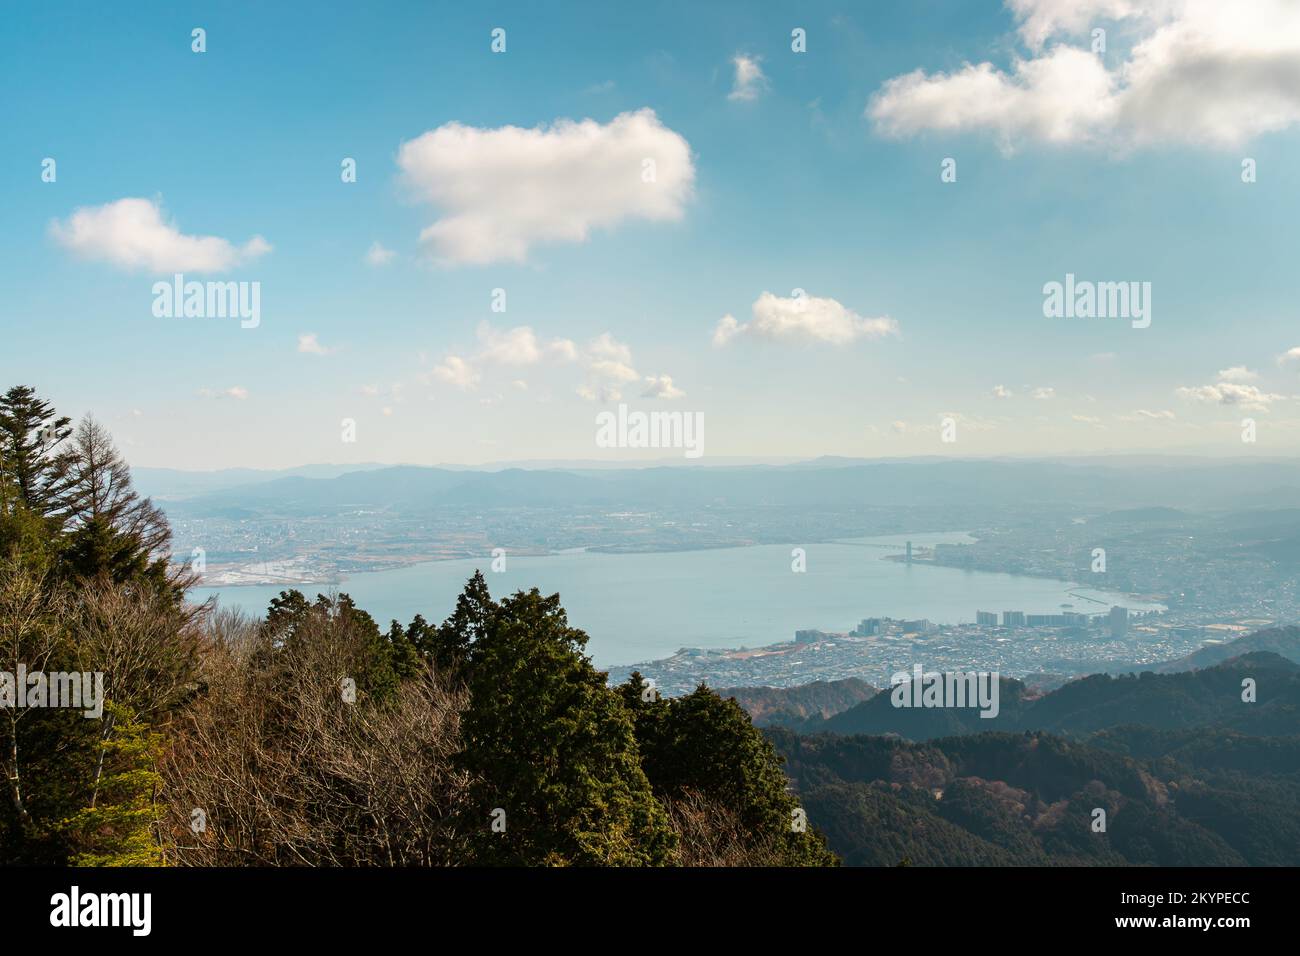 Paesaggio lato sud ovest del lago Biwa (Biwako) e paesaggio urbano di Otsu-shi da una cima di montagna di Hieizan (Monte Hiei), Shiga, Giappone Foto Stock